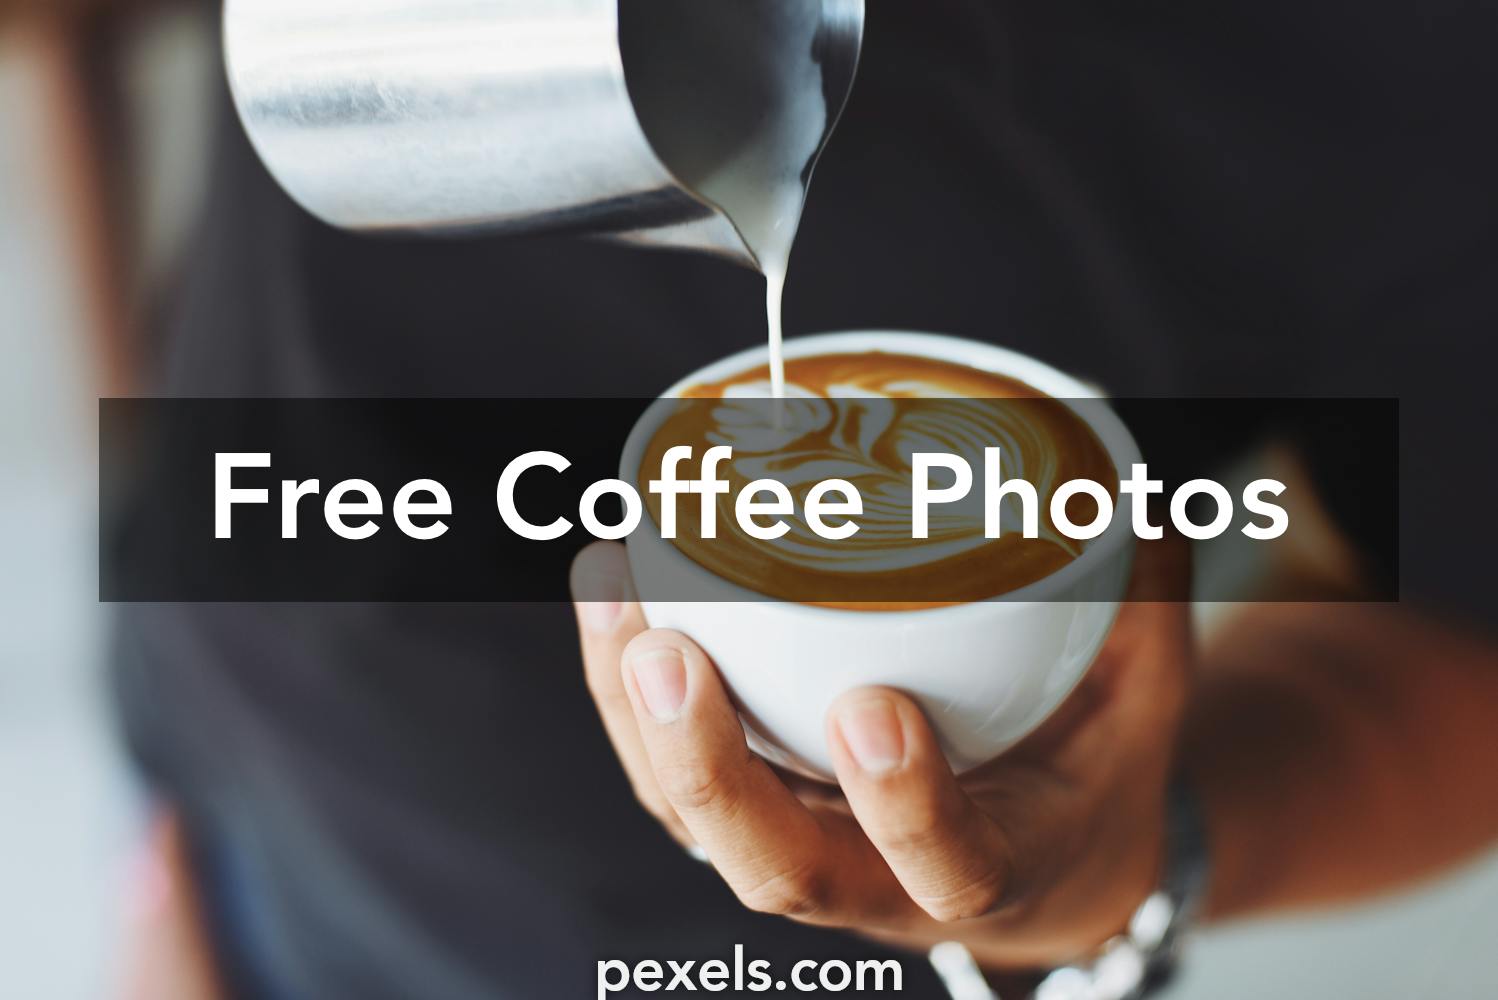 Free Coffee  Stock Photos  Pexels   Free Stock Photos